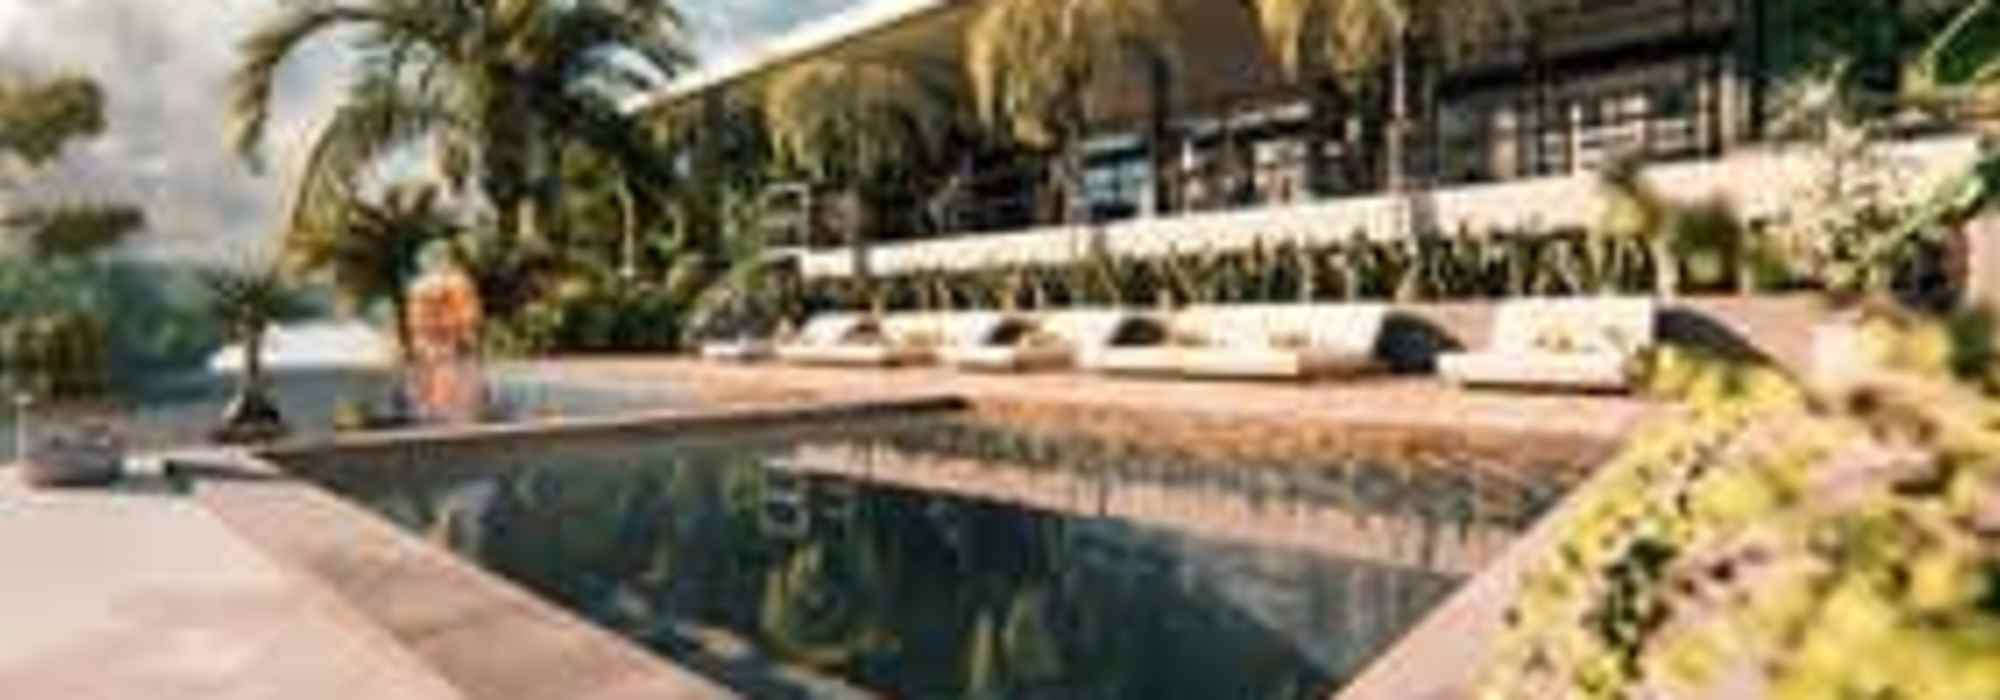 For Sale by Owner House in Bali Wellness Escazu Guachipelin